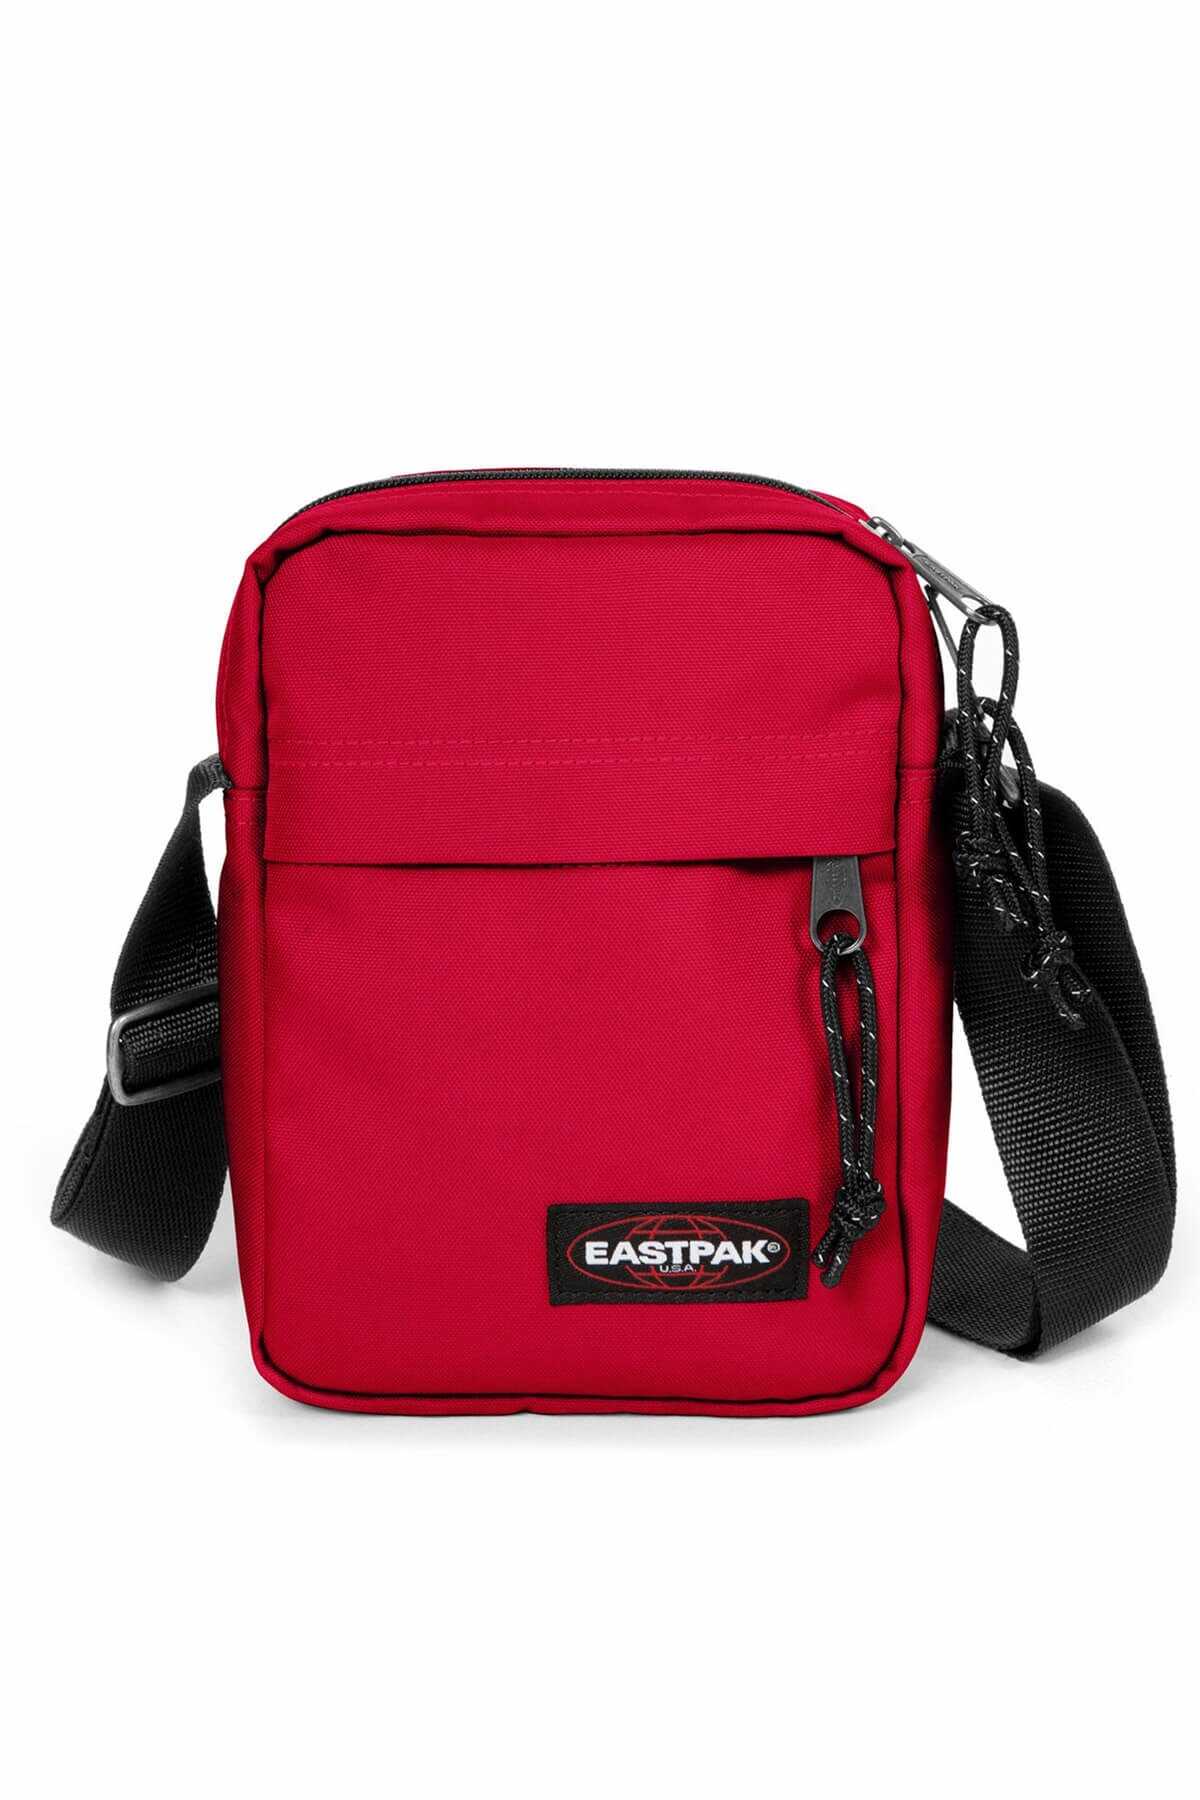 کیف مسنجر یونیسکس قرمز برند Eastpak 